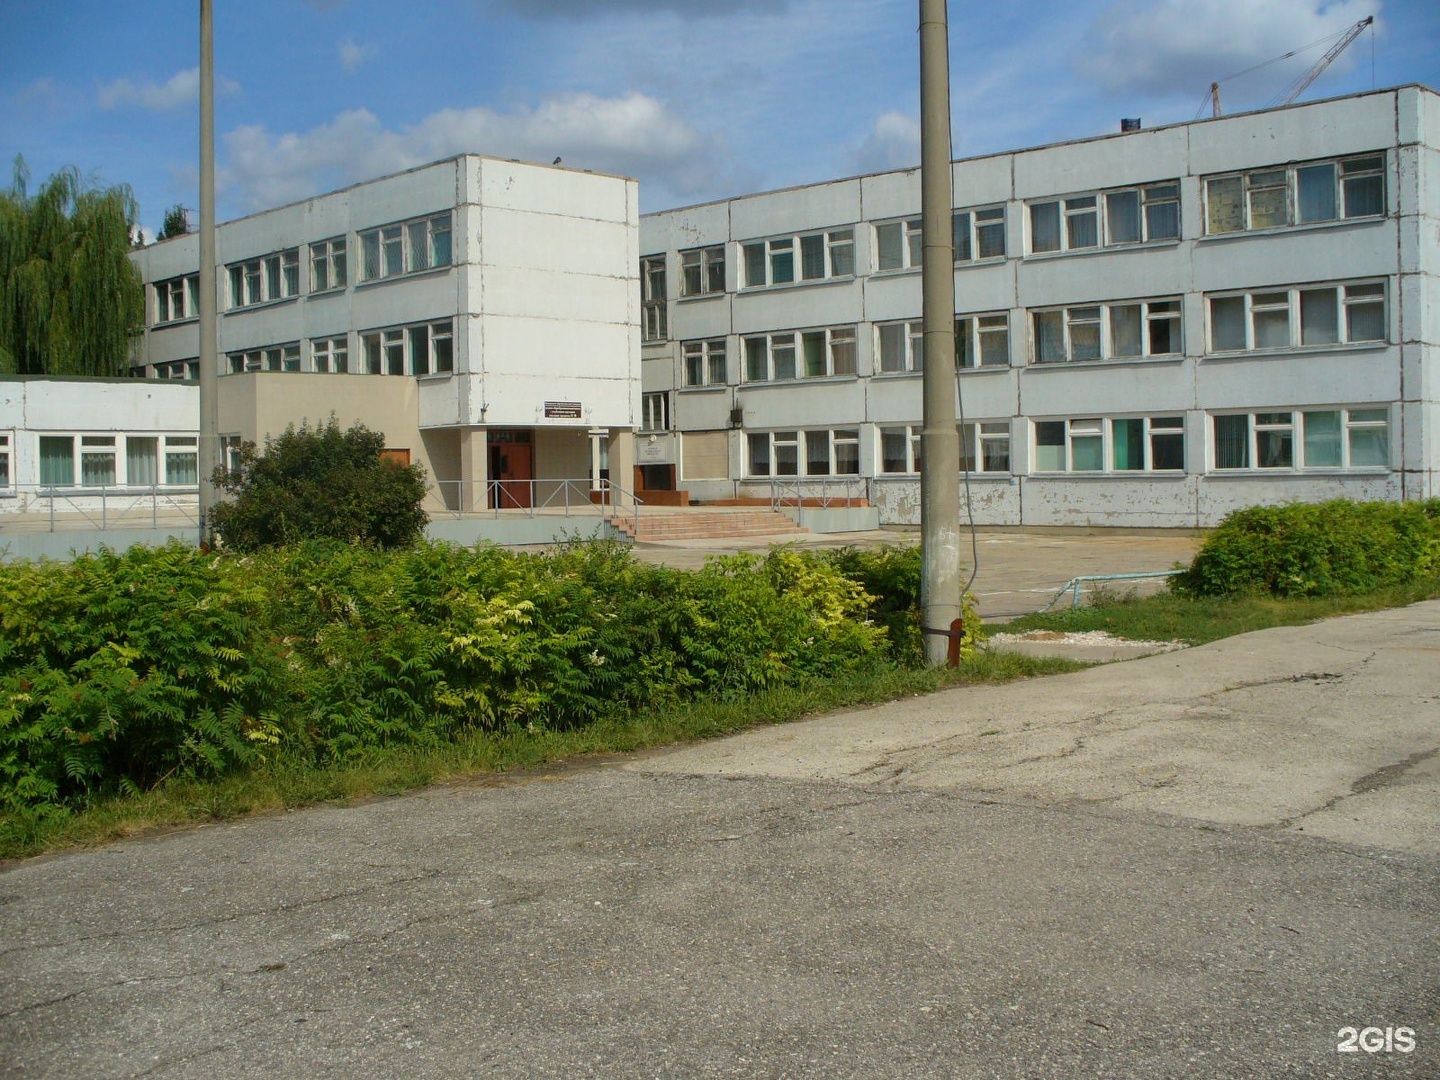 Школа 31 тольятти